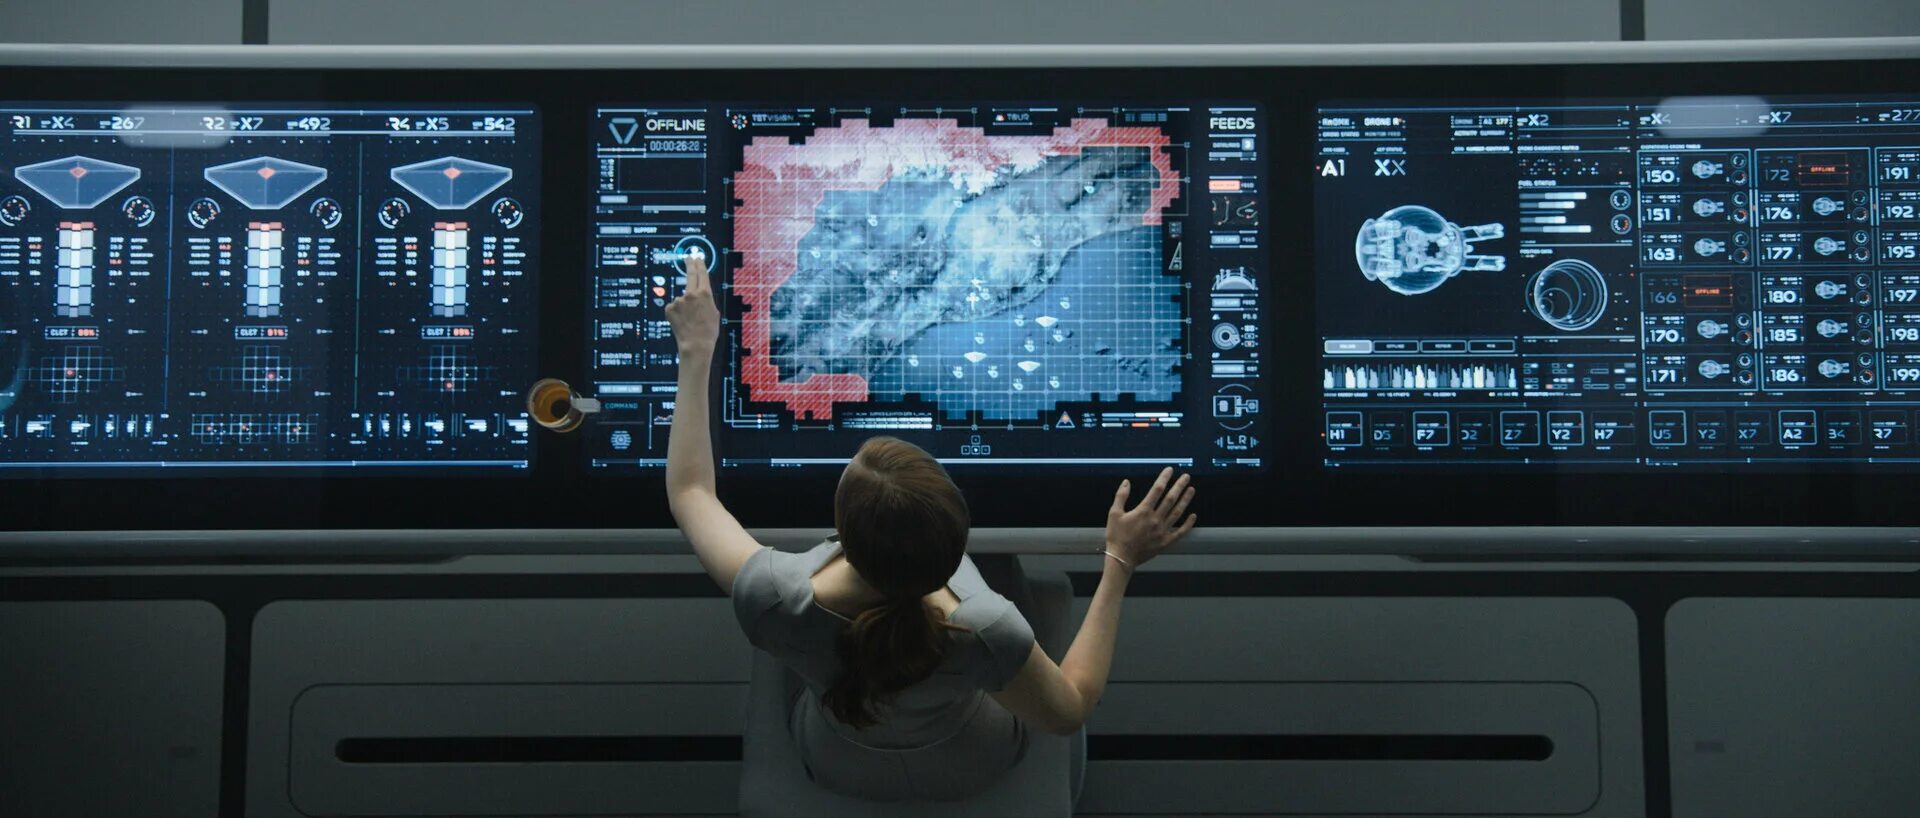 Мониторинг 2013. Интерфейс это. Экран будущего. Компьютерные технологии будущего. Монитор космического корабля.